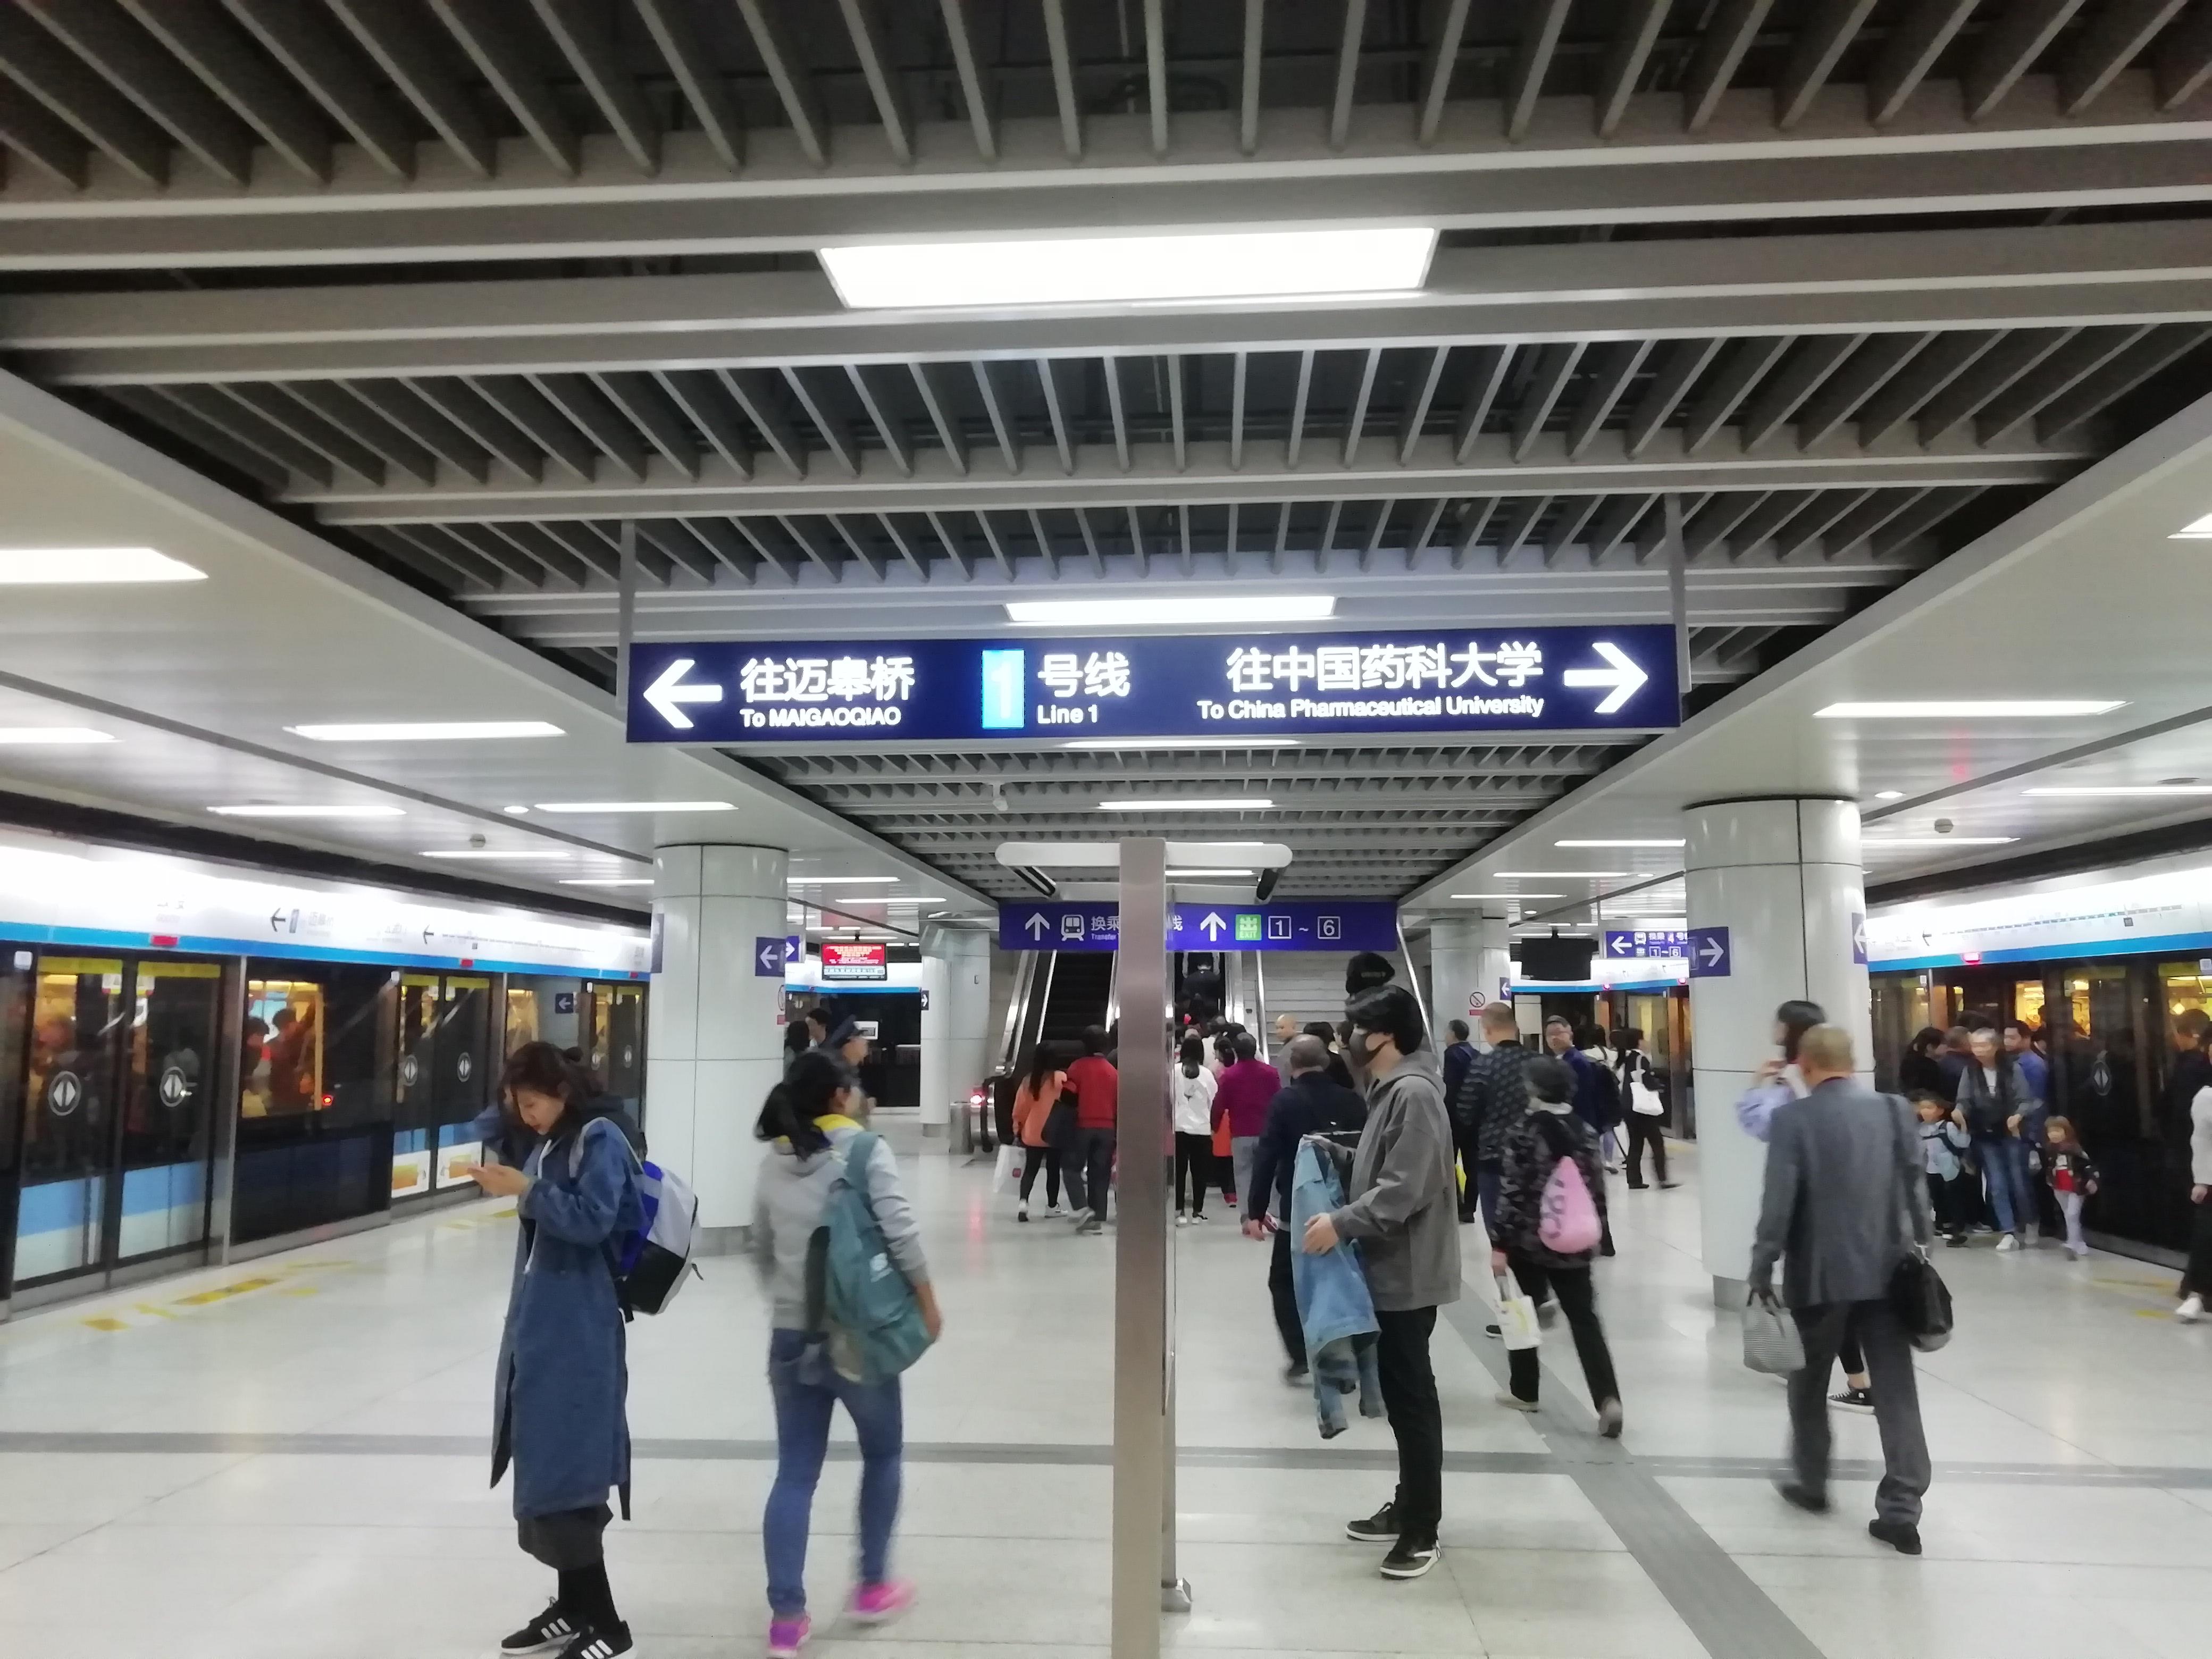 南京·单车下的地铁——1号线 (1)（迈皋桥--鼓楼段）